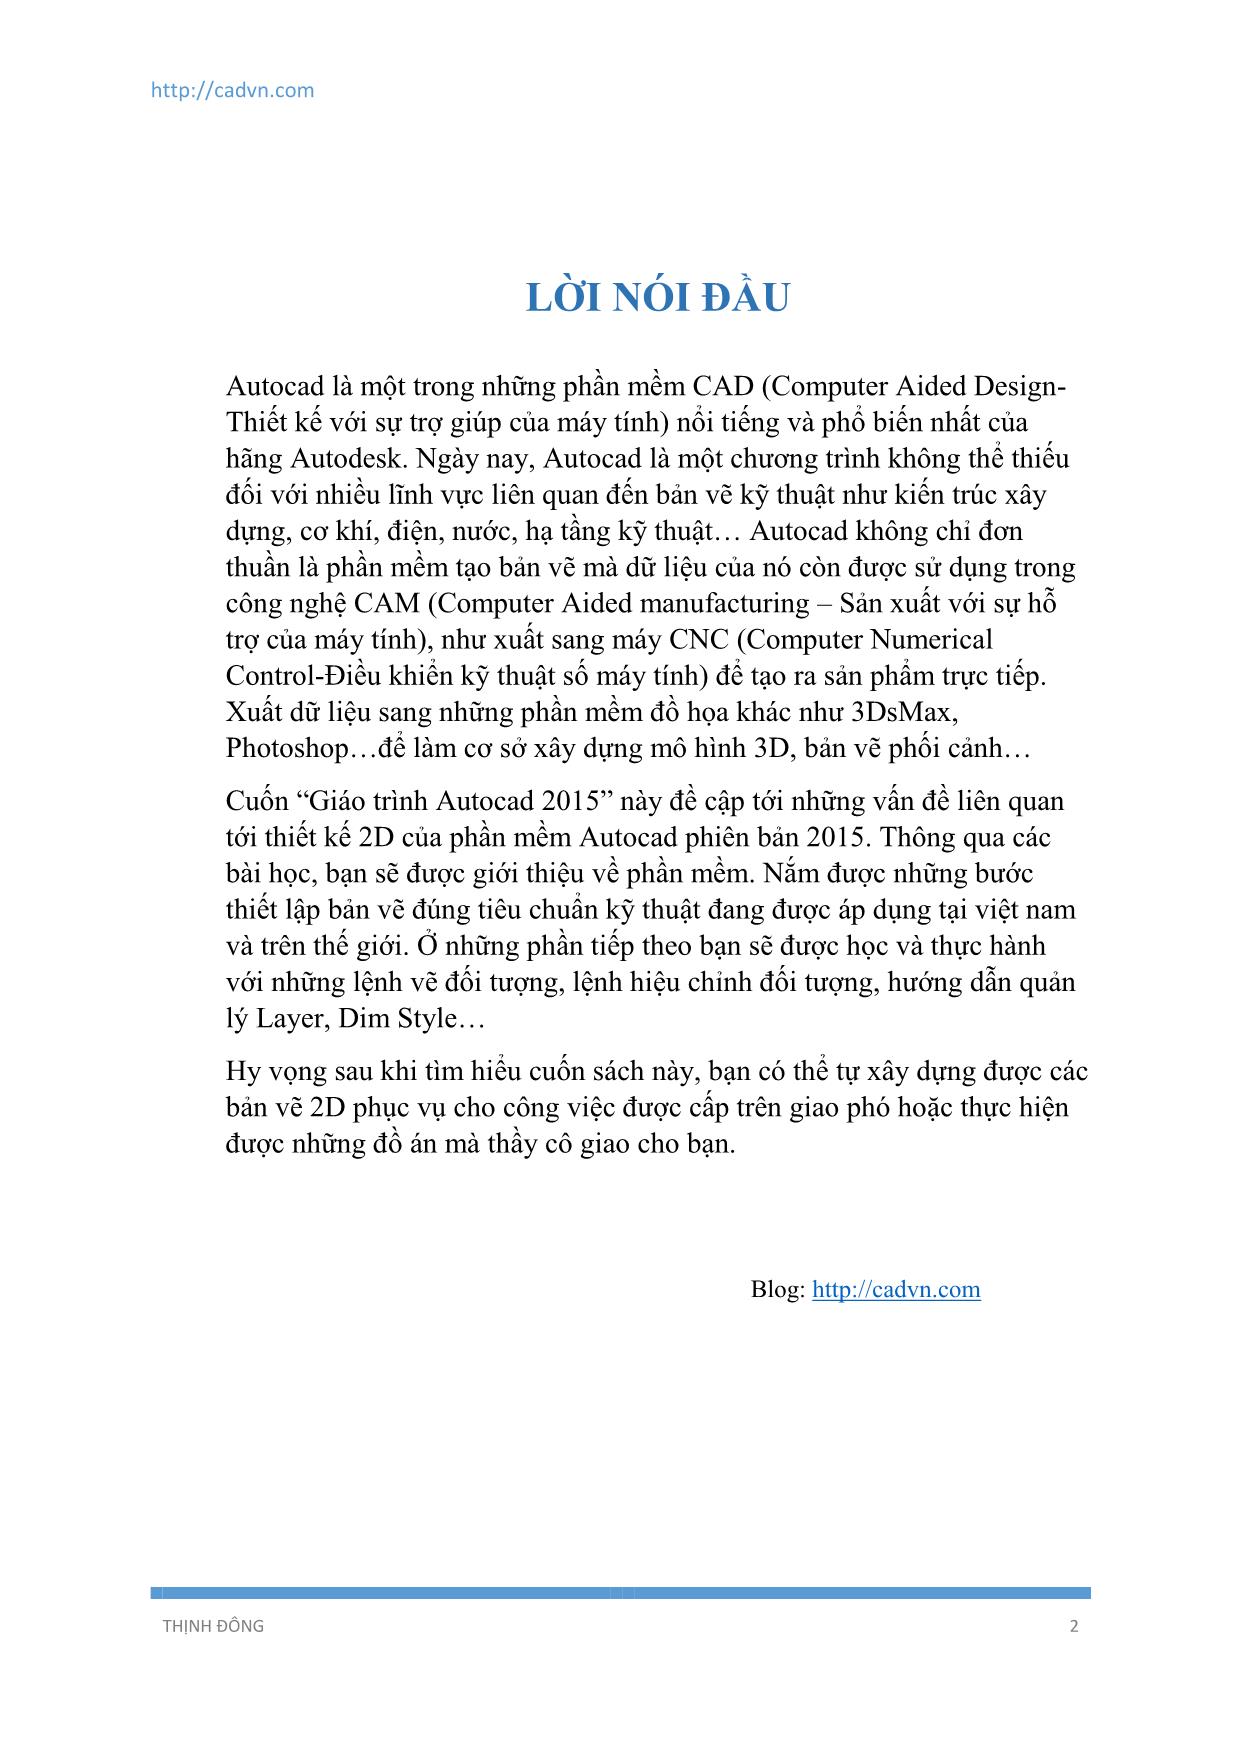 Giáo trình Autocad (Phần 1) trang 2